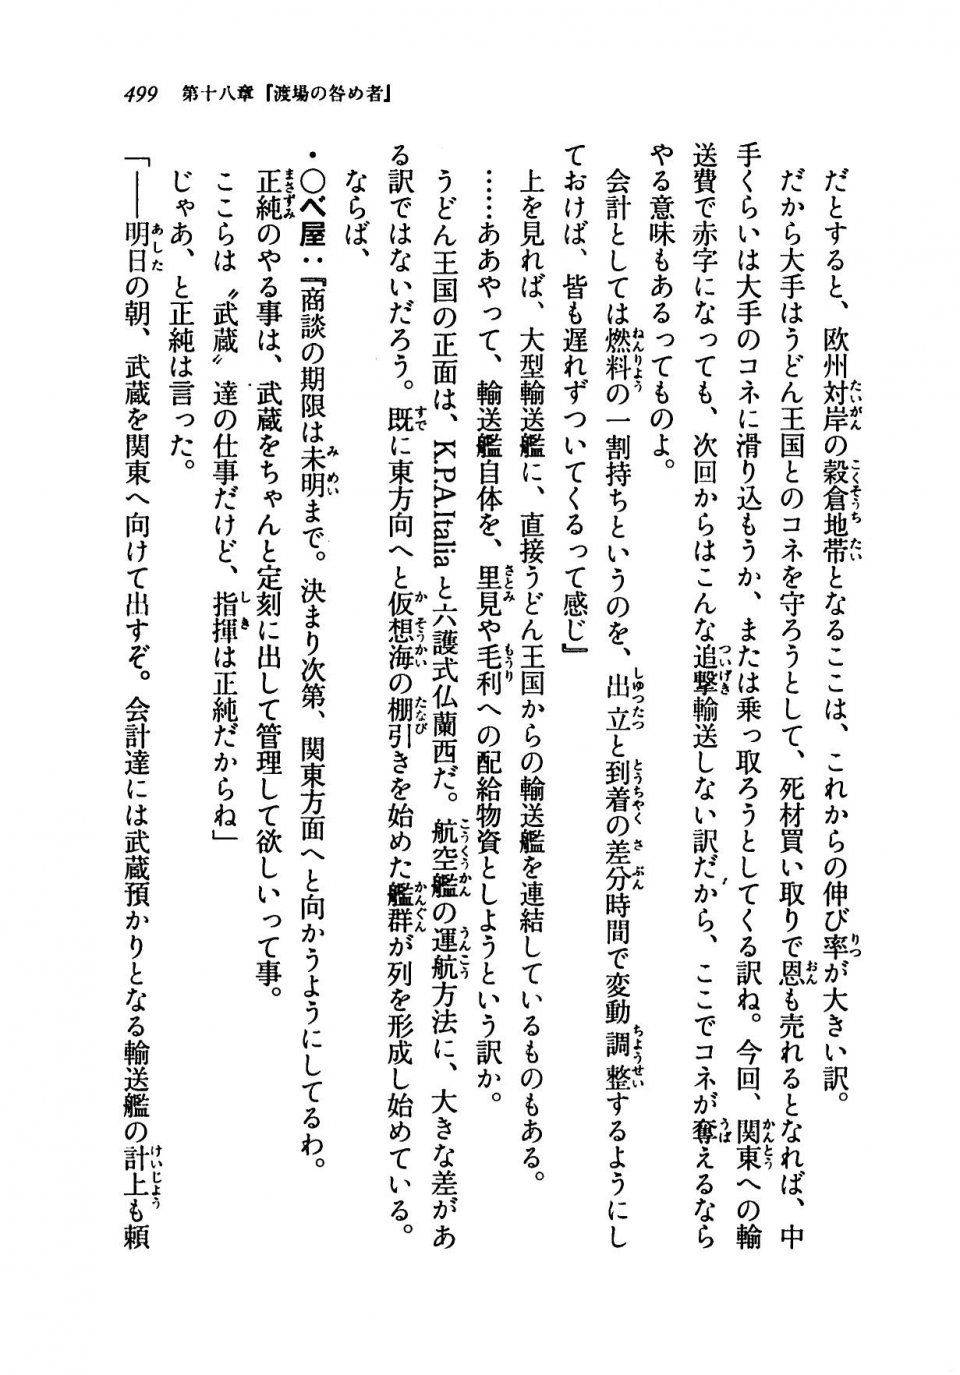 Kyoukai Senjou no Horizon LN Vol 19(8A) - Photo #499